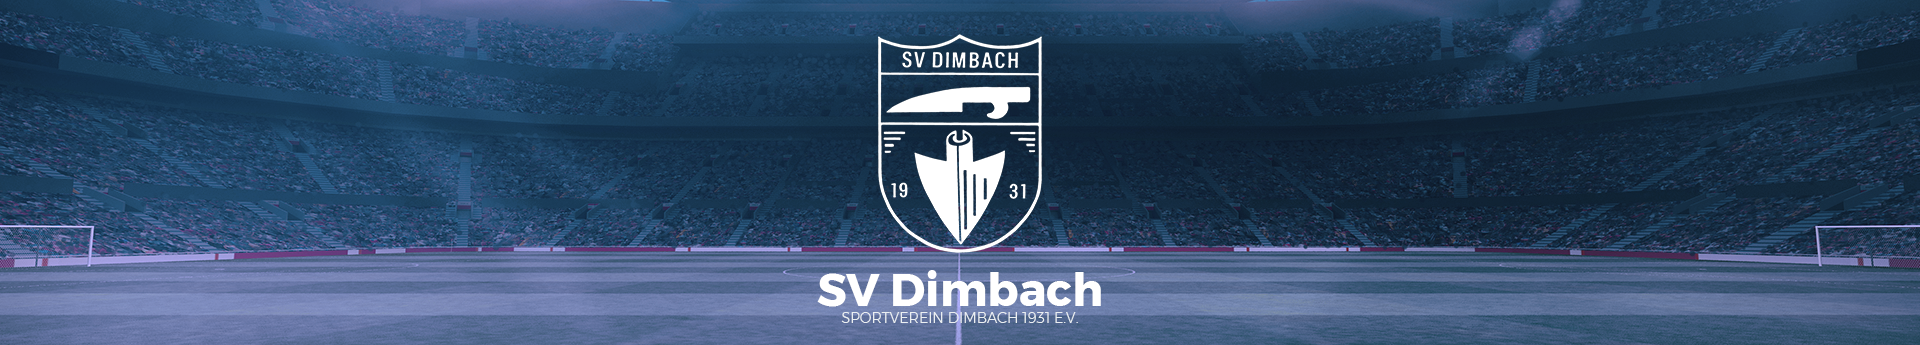 SV Dimbach Gesamtübersicht Title Image